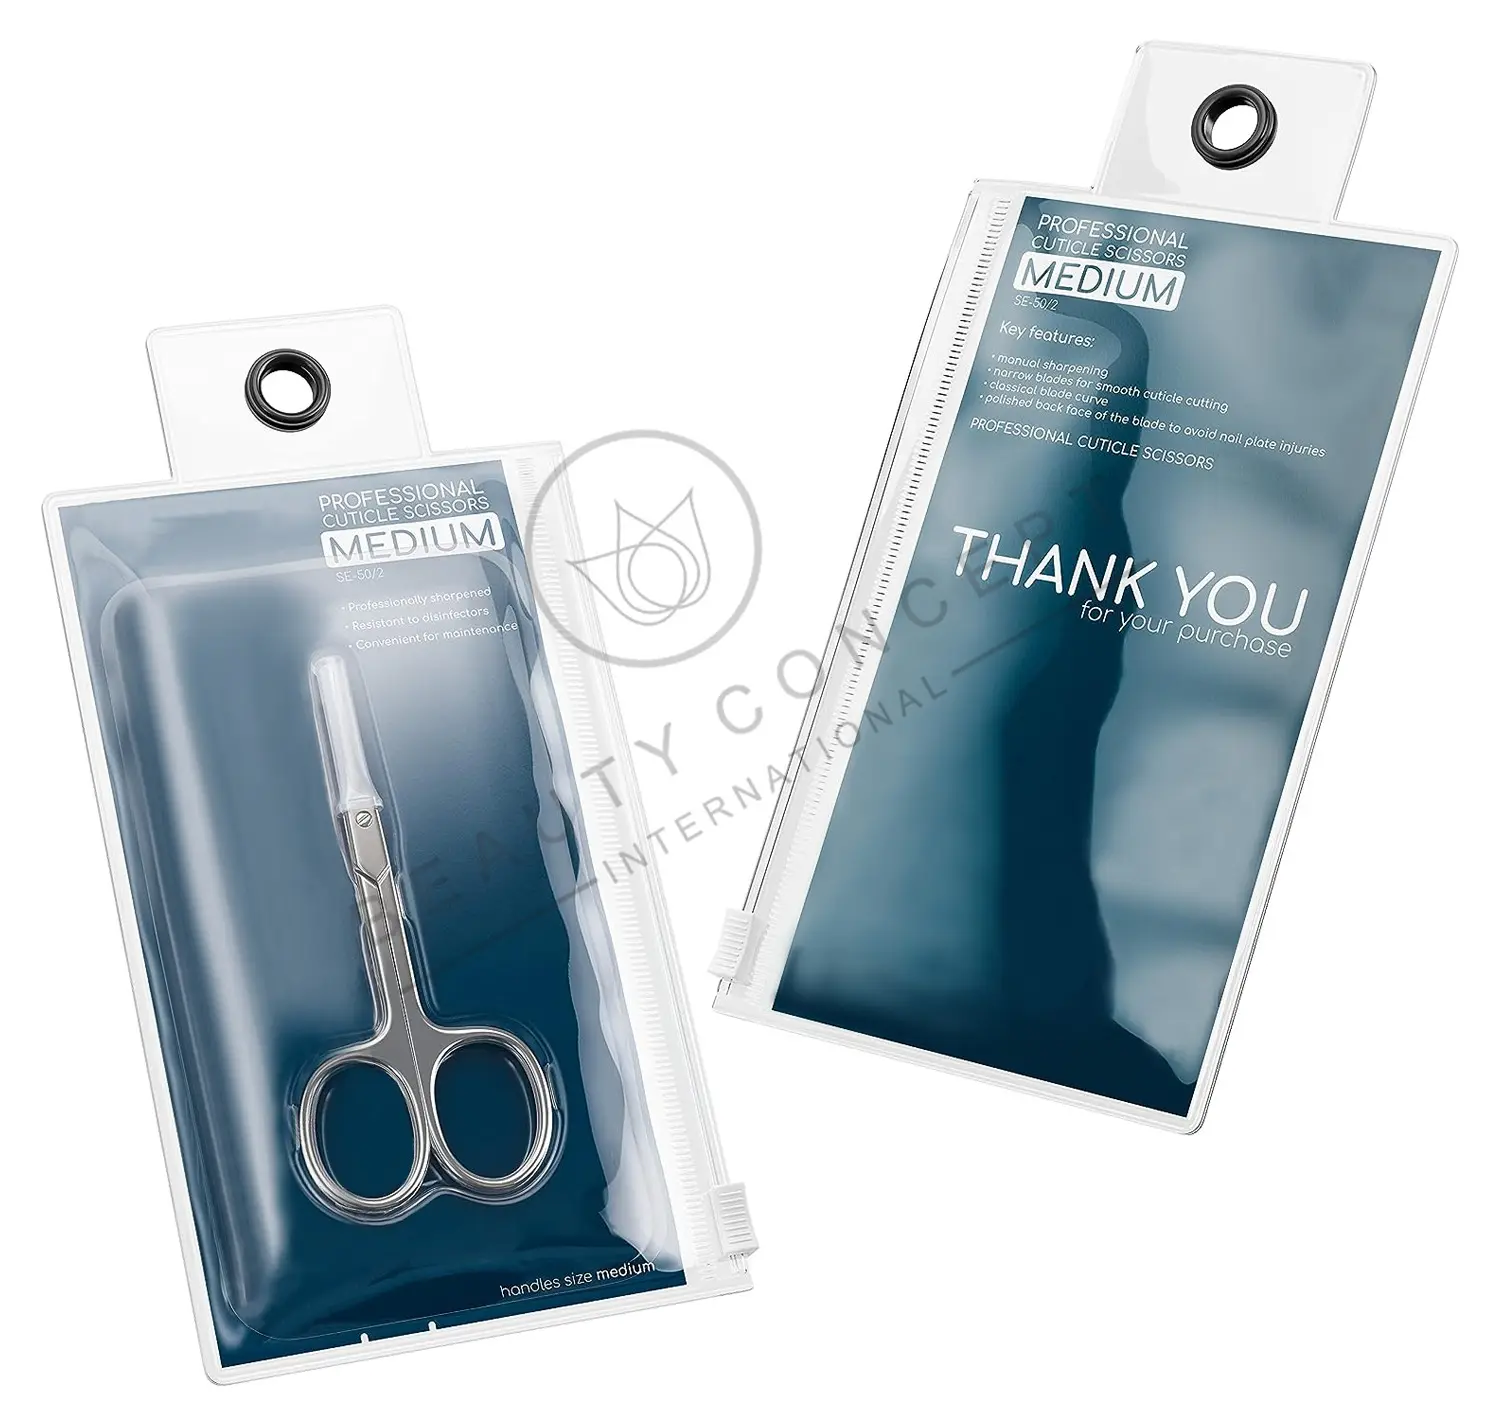 Professional Cutícula Scissors Pro Expert Tipo 1 Long Lasting Beauty Scissors para Cutícula Nail Care com Embalagem Personalizada OEM